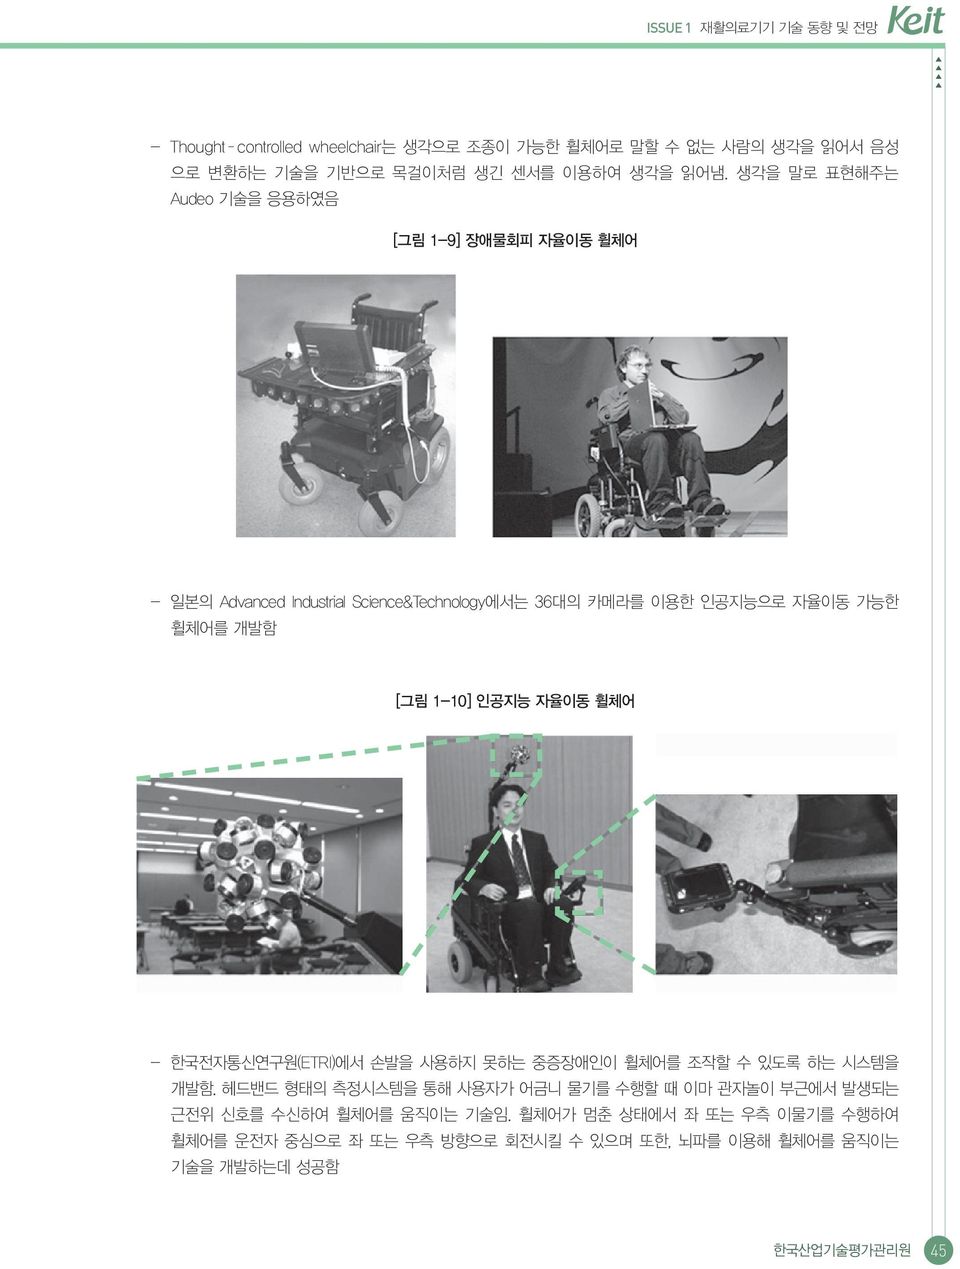 1-10] 인공지능 자율이동 휠체어 - 한국전자통신연구원(ETRI)에서 손발을 사용하지 못하는 중증장애인이 휠체어를 조작할 수 있도록 하는 시스템을 개발함.